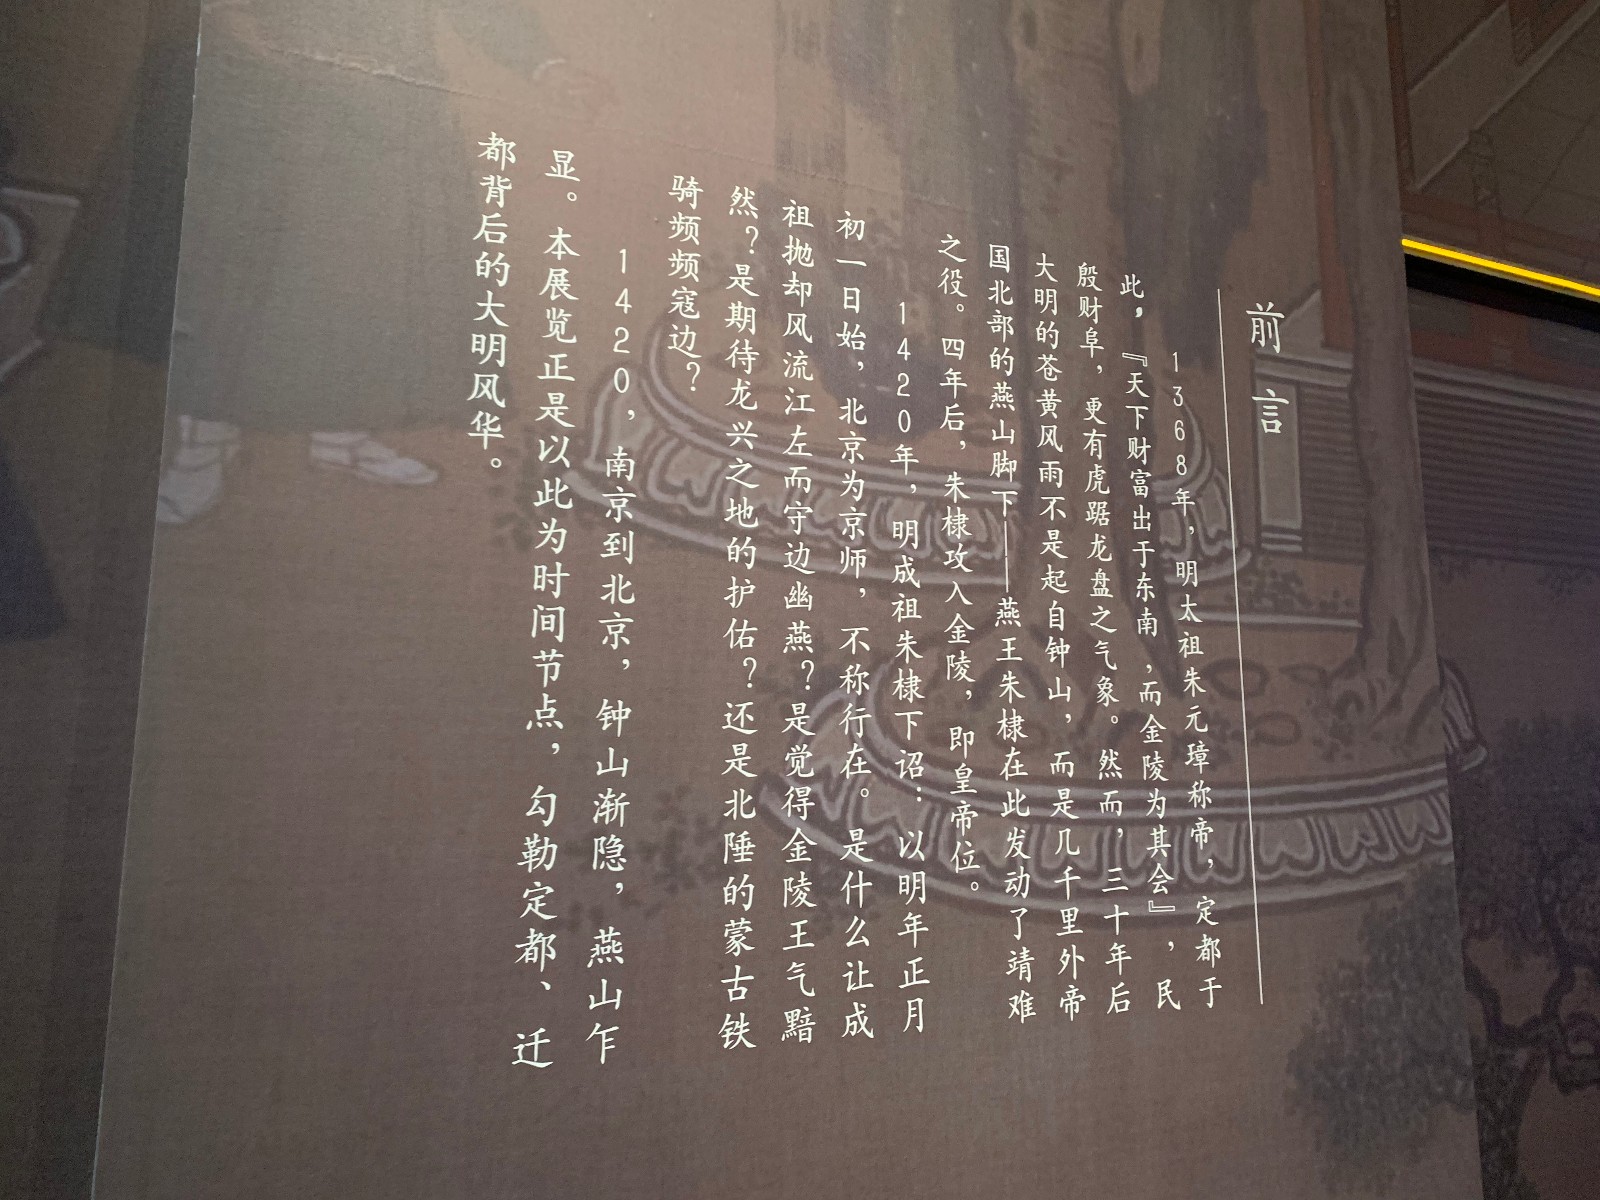 首都博物馆开年特展"1420:从南京到北京"重现大明风华